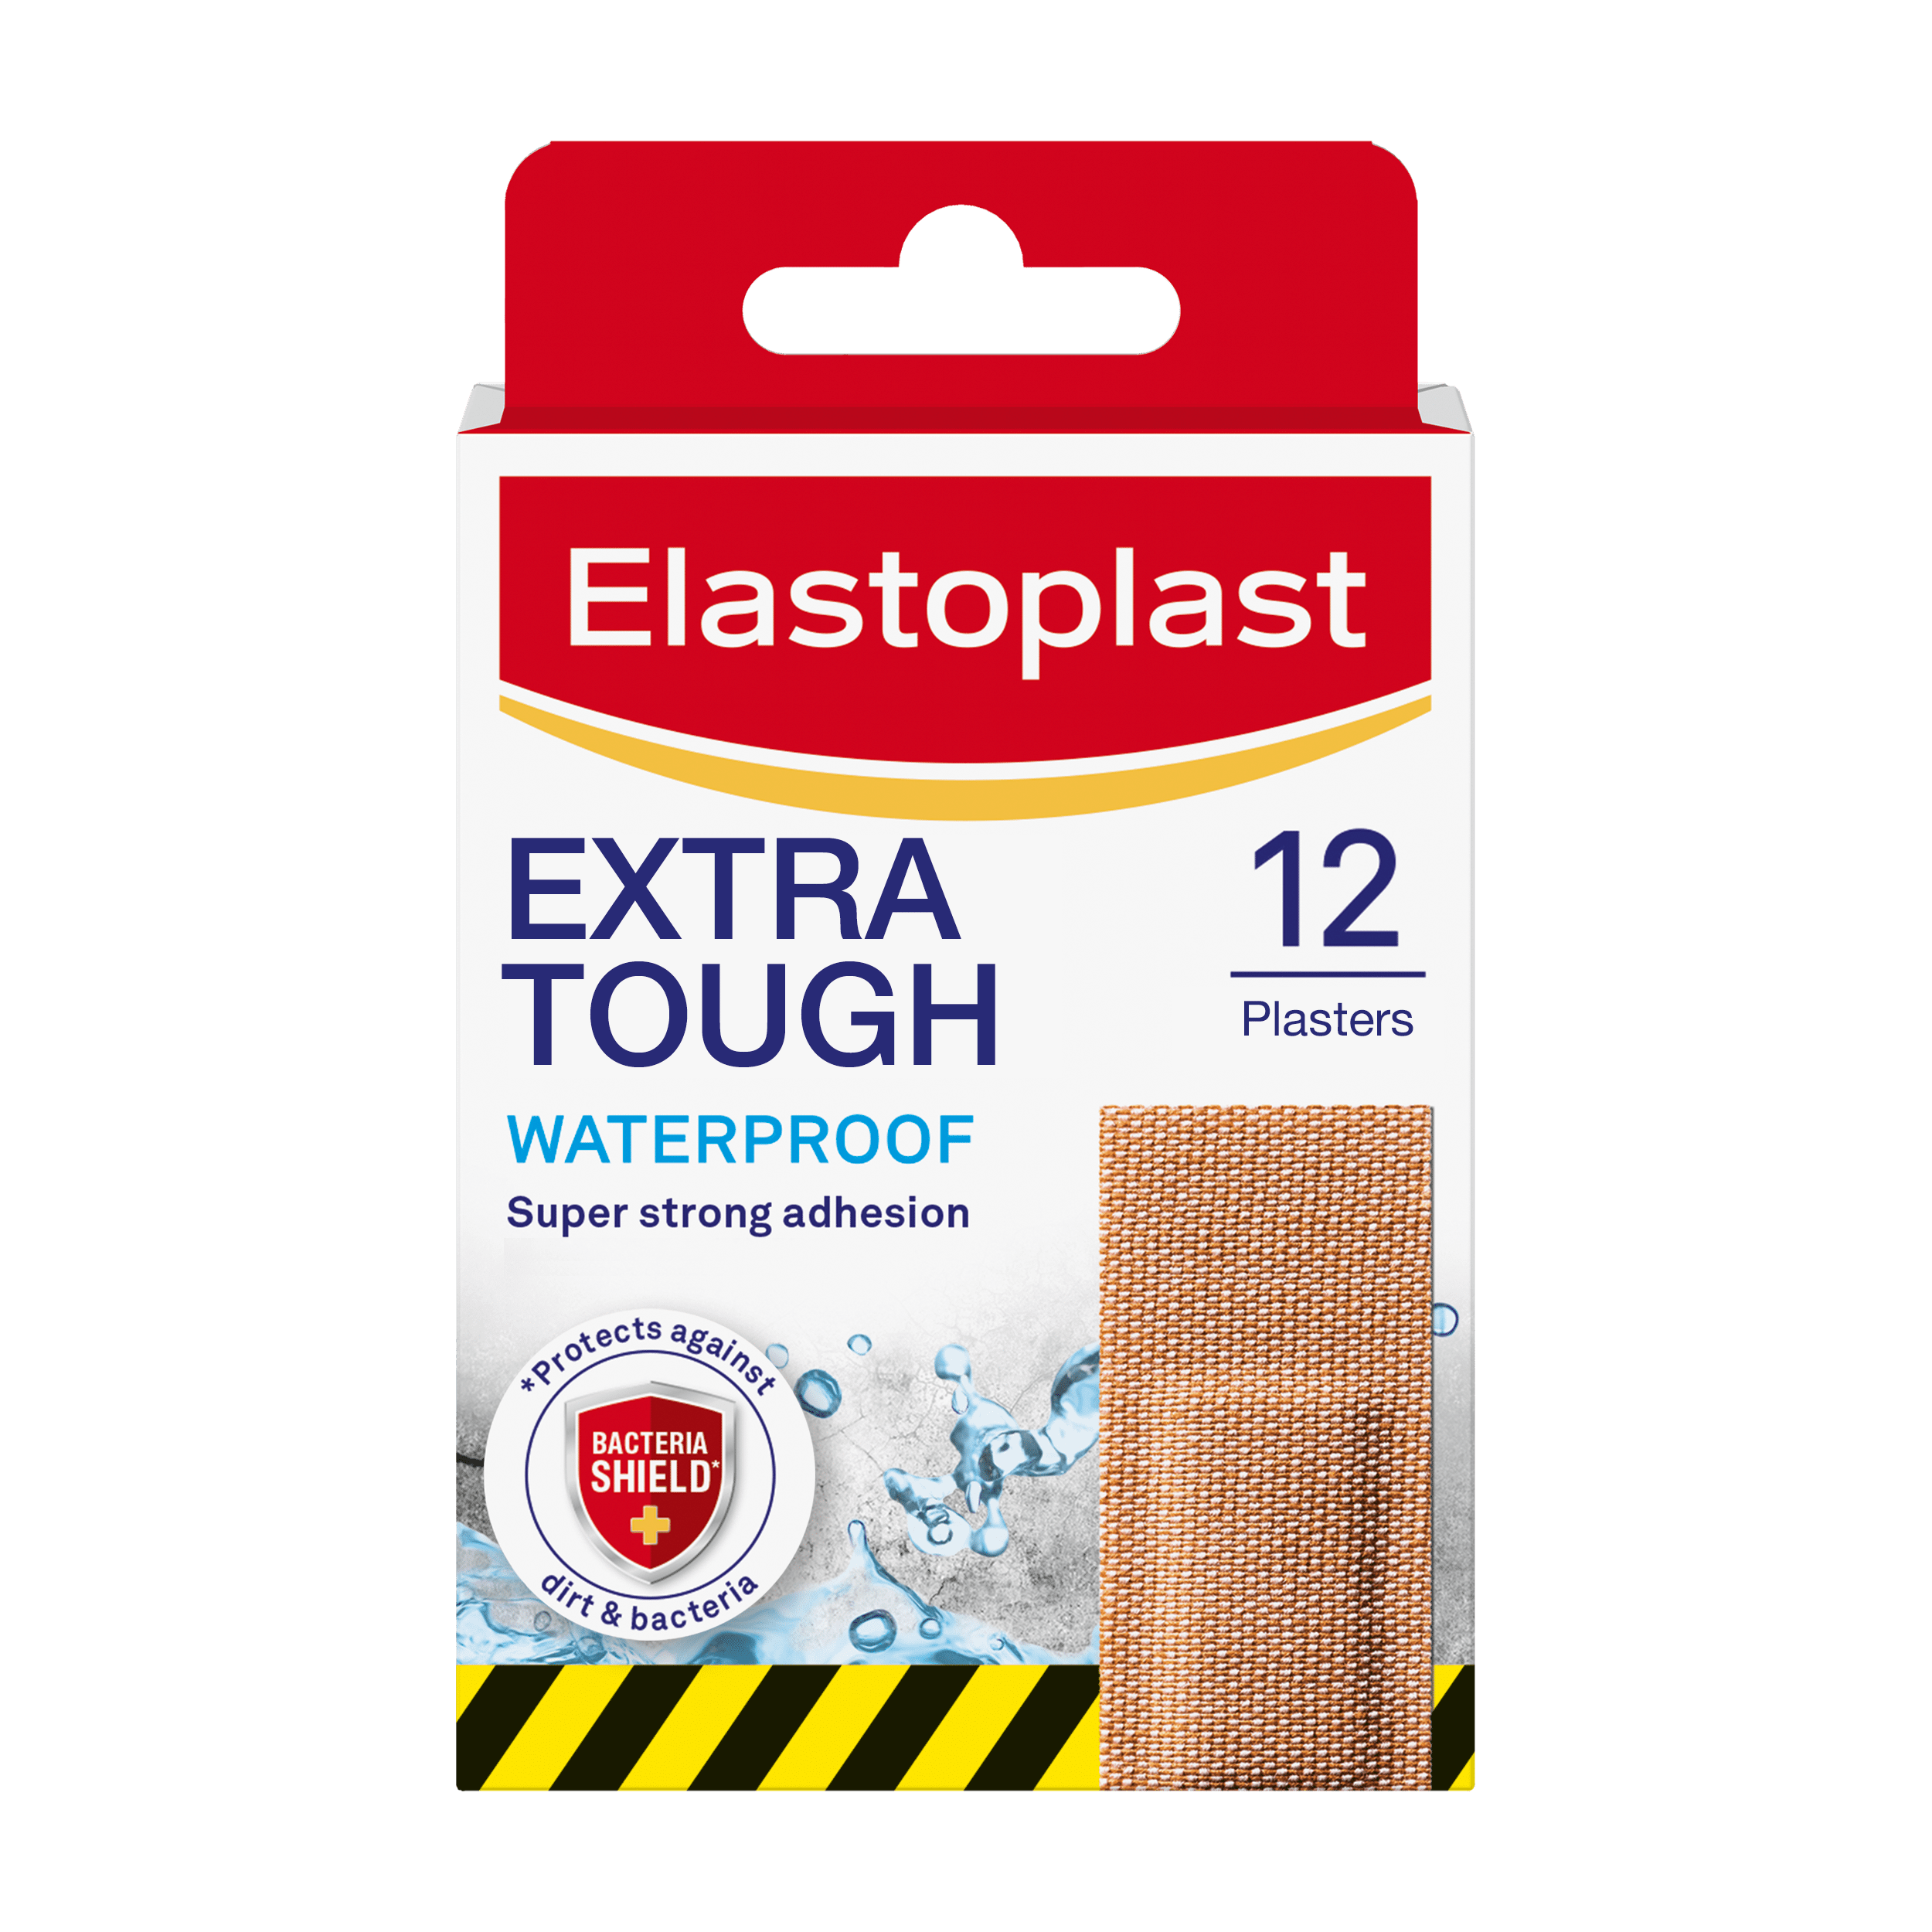 Packshot of Elastoplast Extra Tough Waterproof plasters